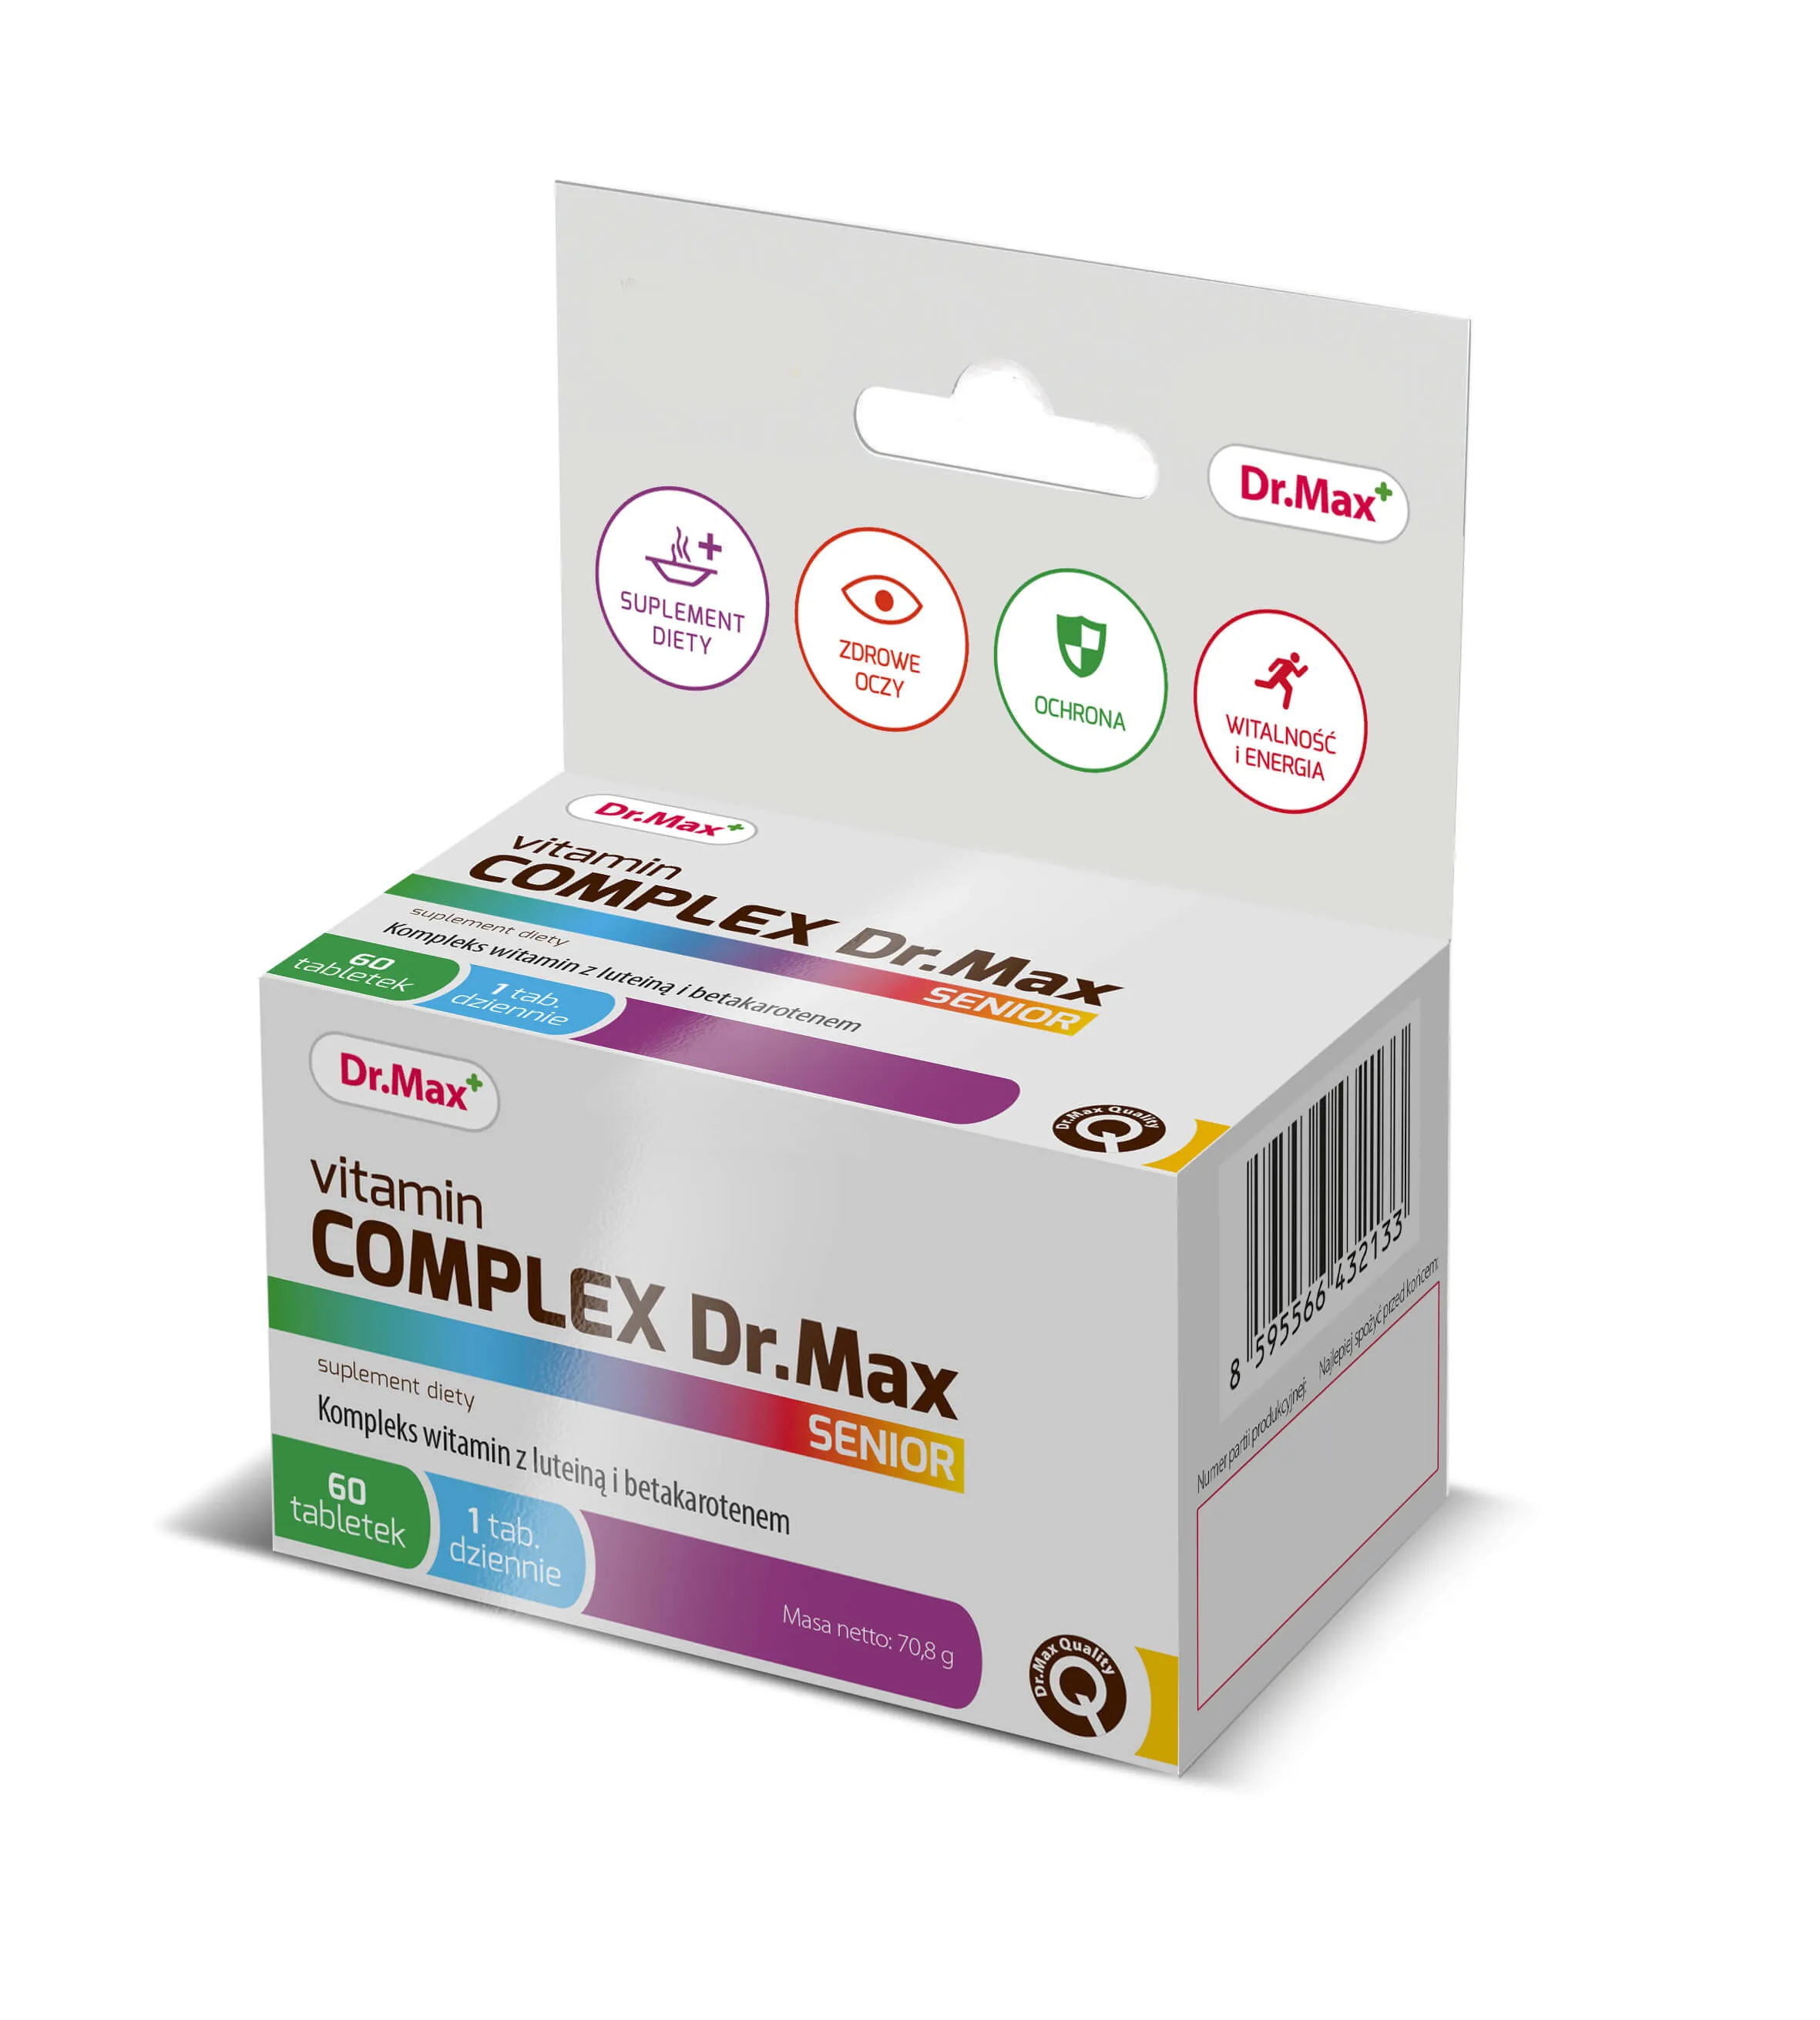 Vitamin Complex Senior Dr.Max, suplement diety, 60 tabletek